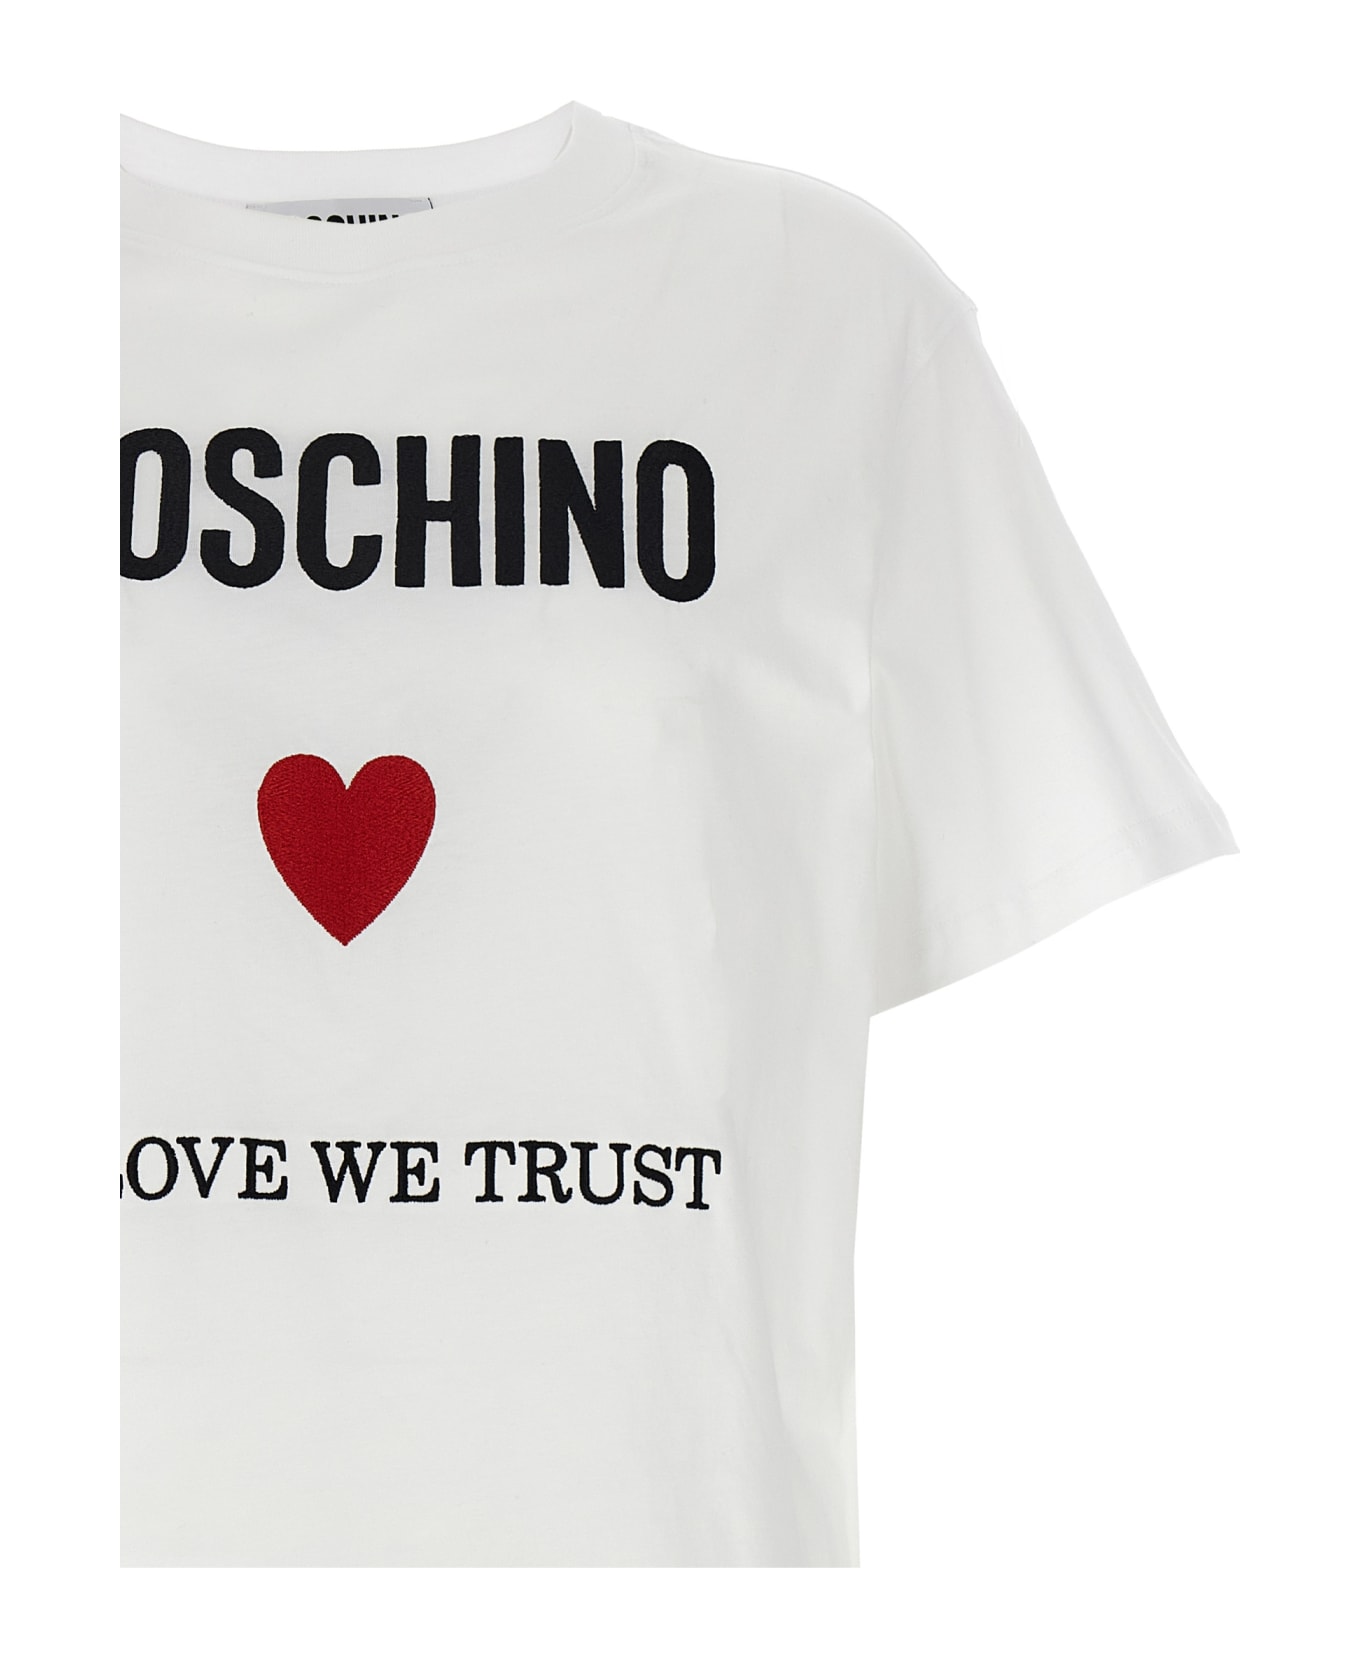 Moschino 'in Love We Trust' T-shirt